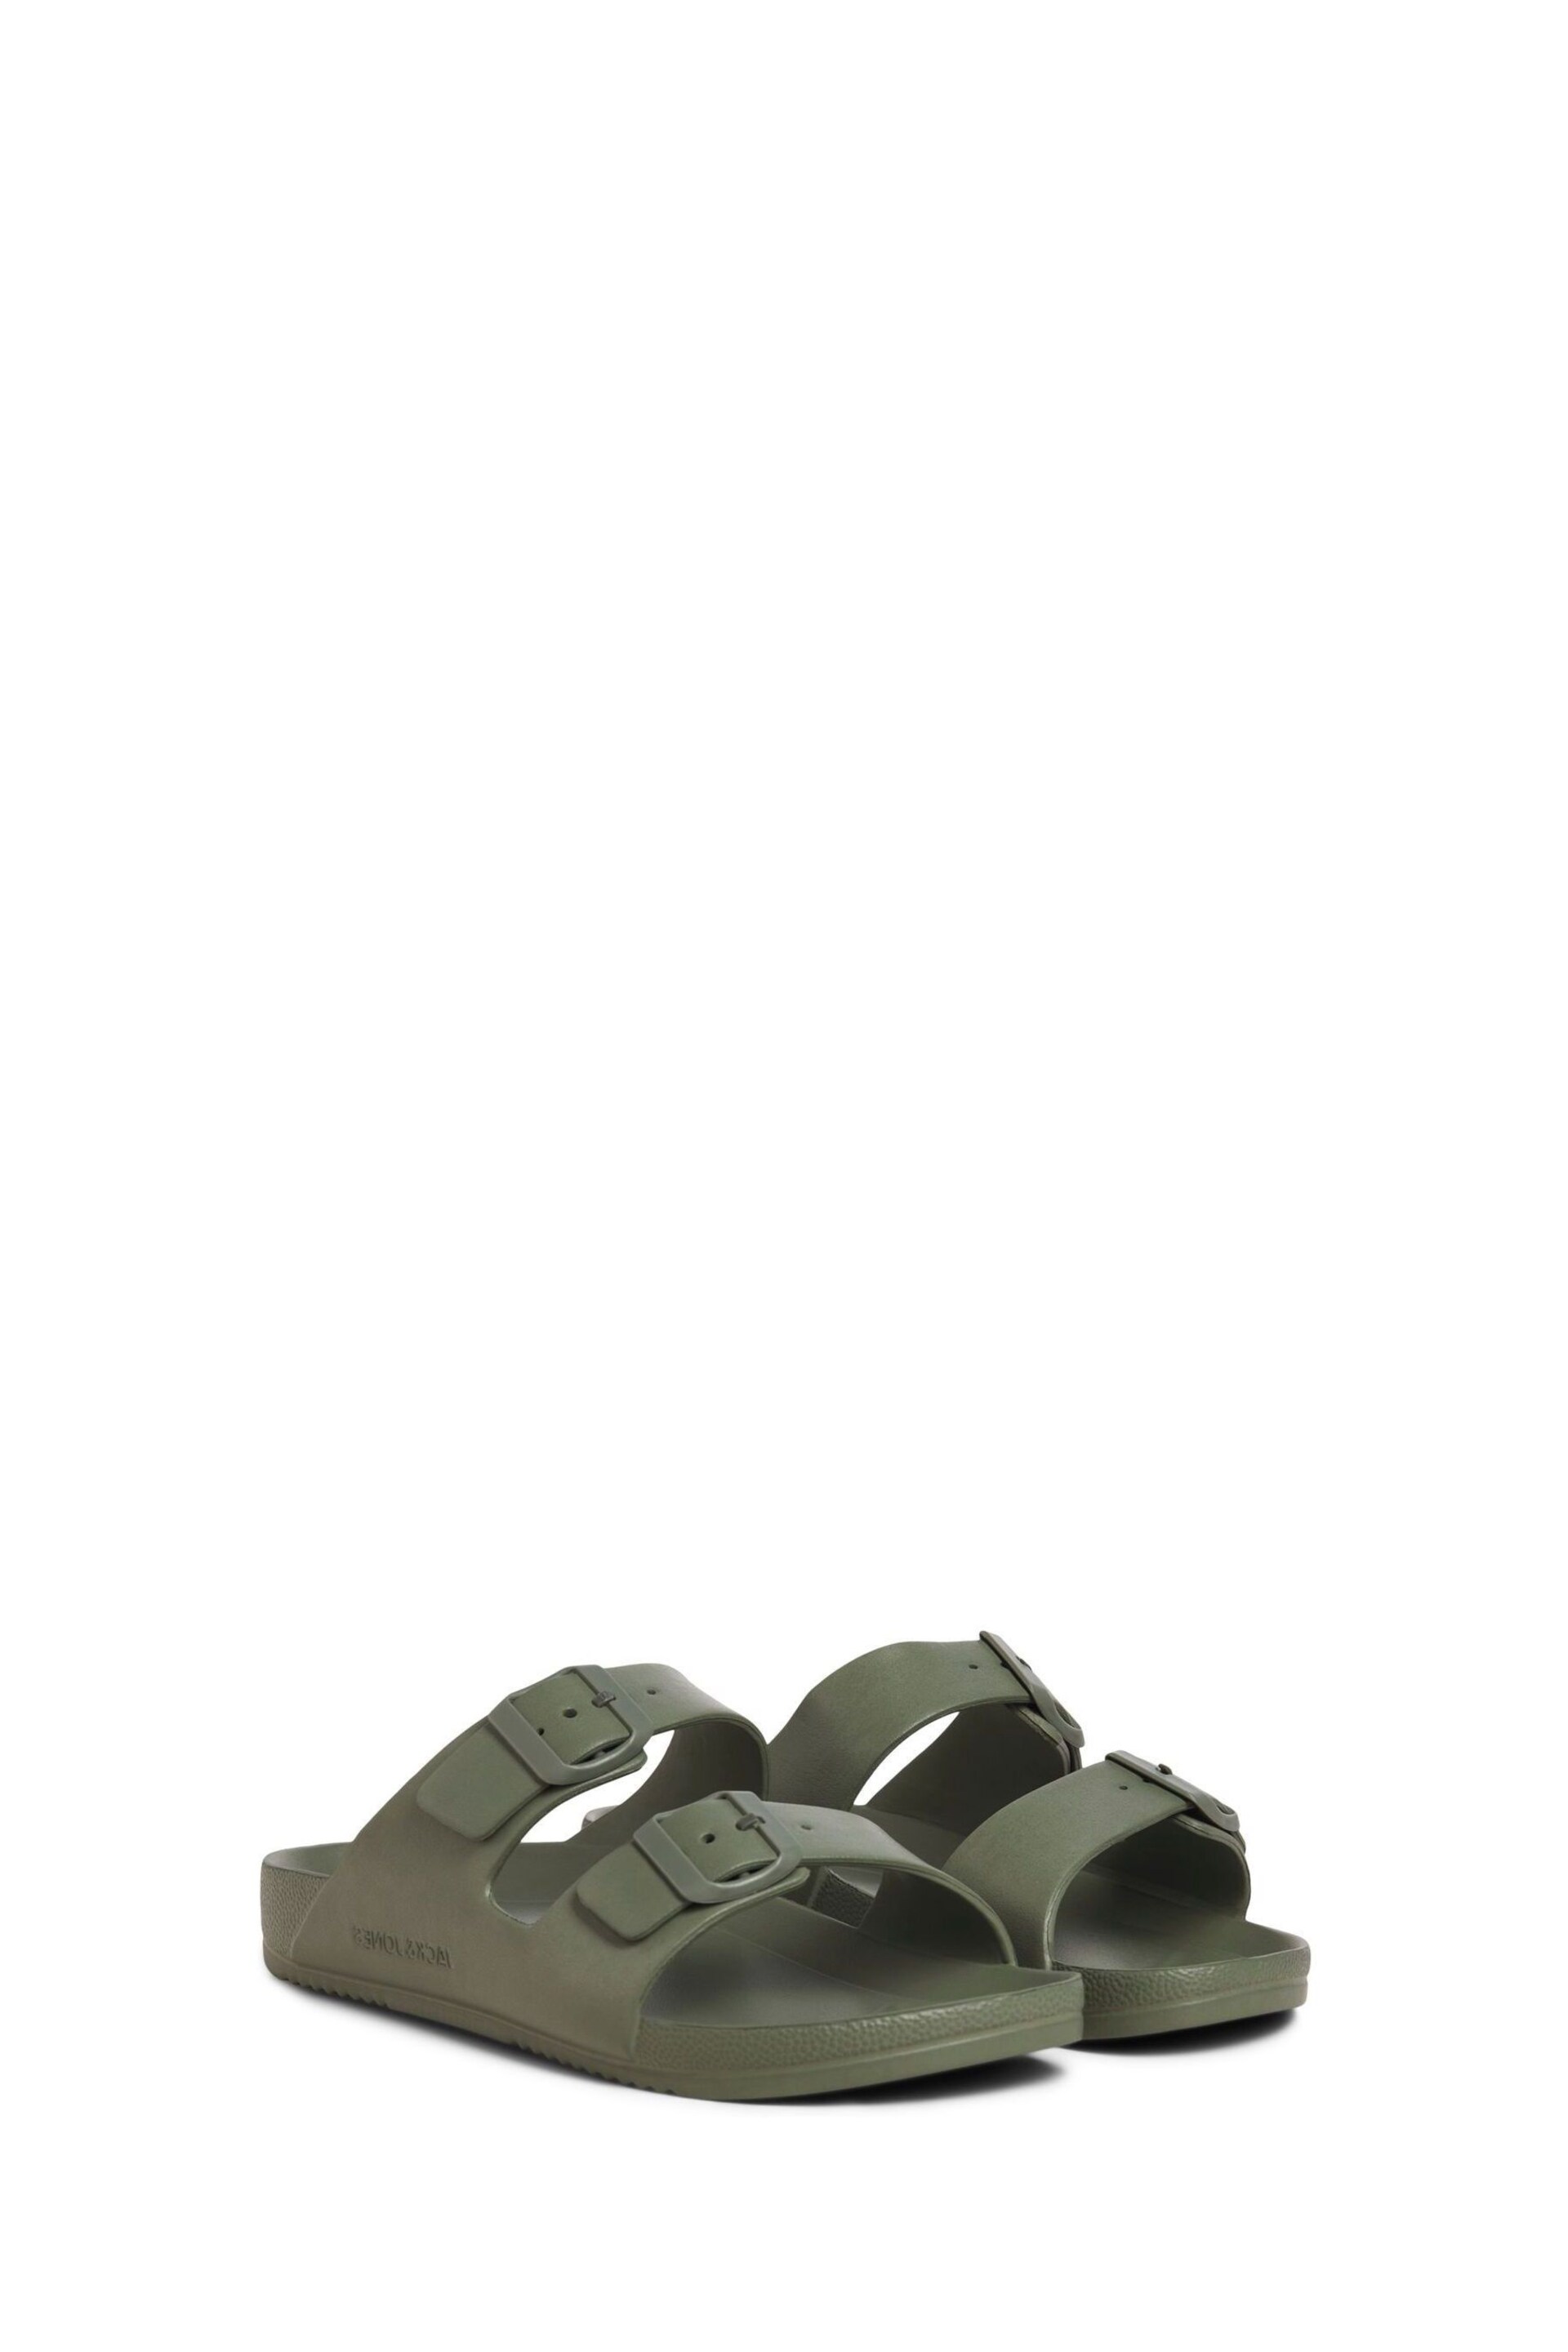 JACK & JONES Green Double Strap Sandals - Image 3 of 6